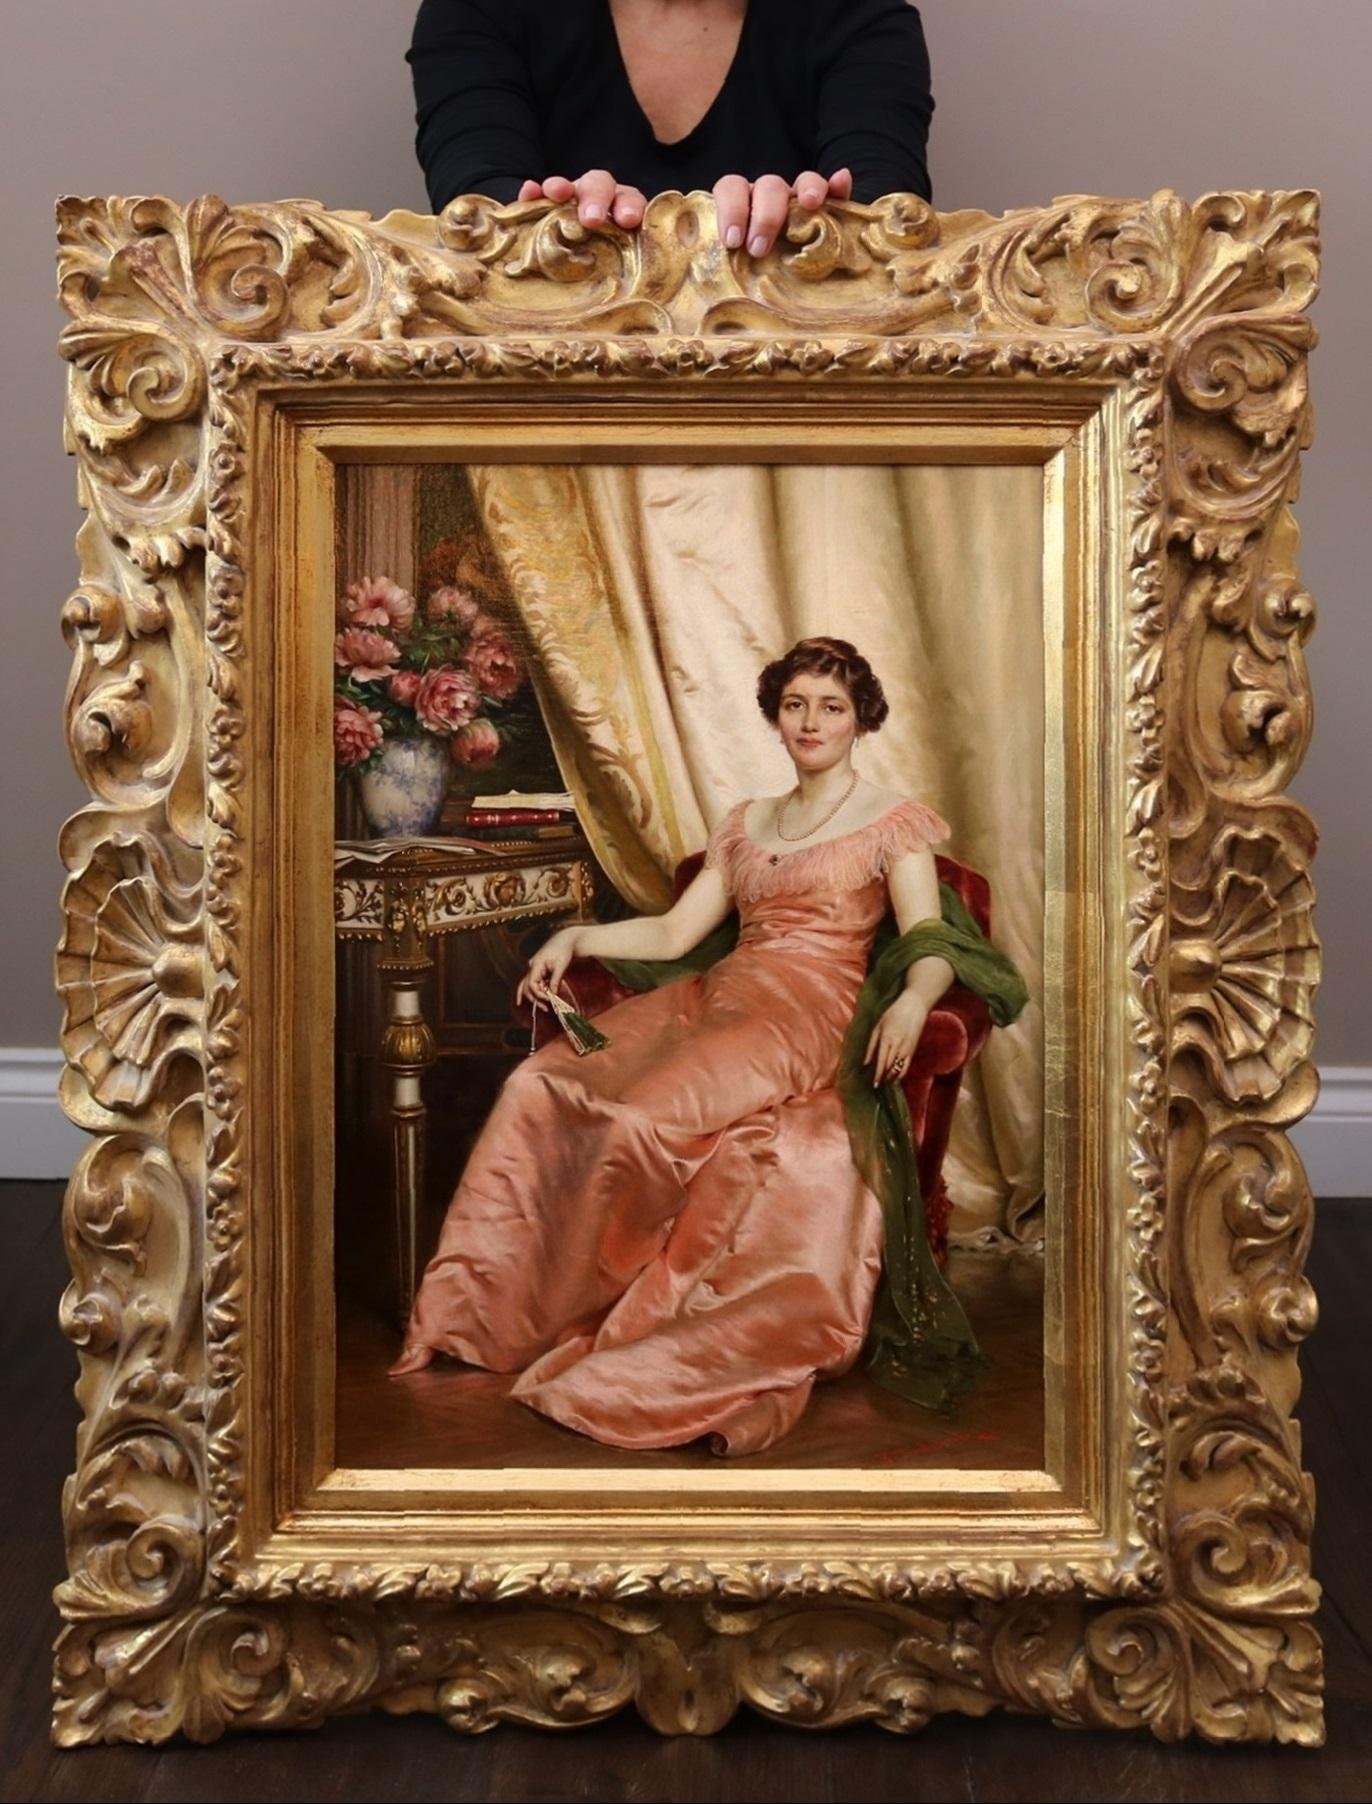 Frédéric Soulacroix Figurative Painting – Regina dei Fiori - 19. Jahrhundert Gesellschaft Ölgemälde Porträt der italienischen Schönheit